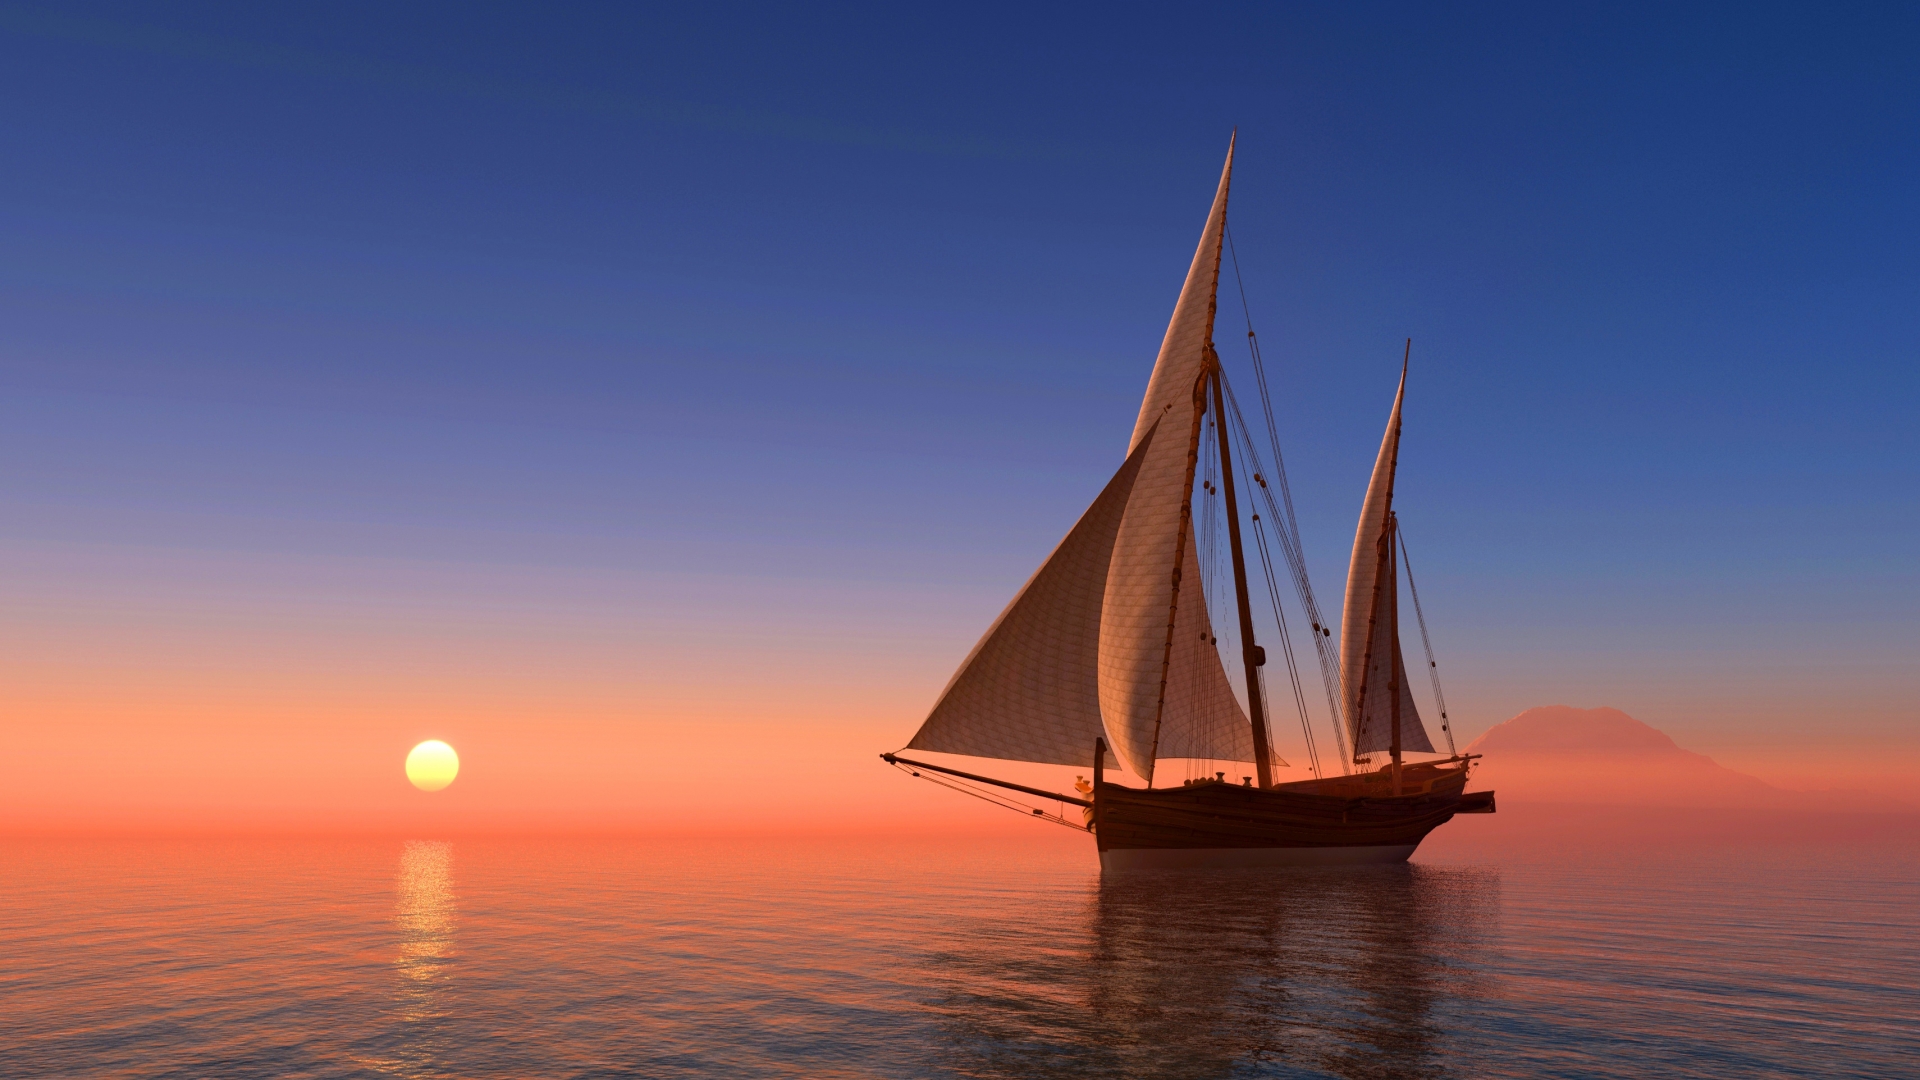 عکس قایق در دریا هنگام غروب آفتاب با کیفیت فور کی 4k برای والپیپر 